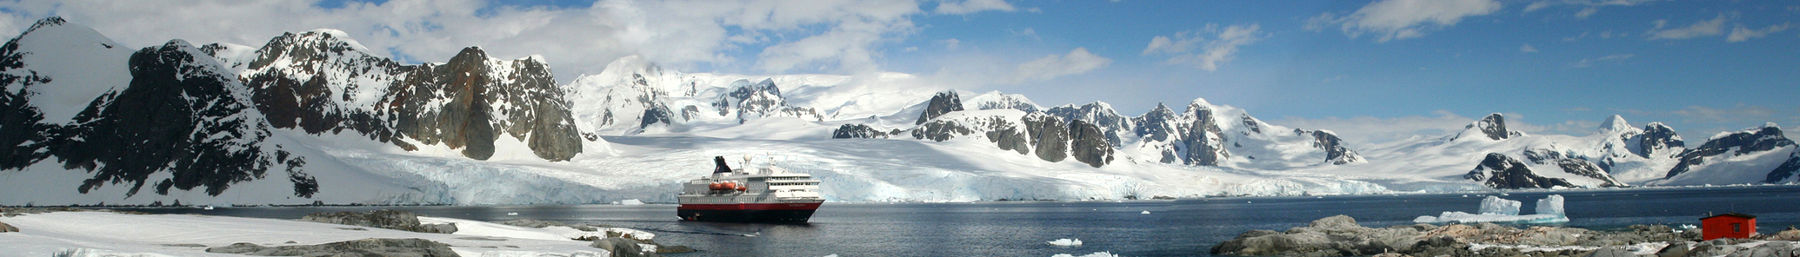 Bán đảo Nam Cực-banner.jpg